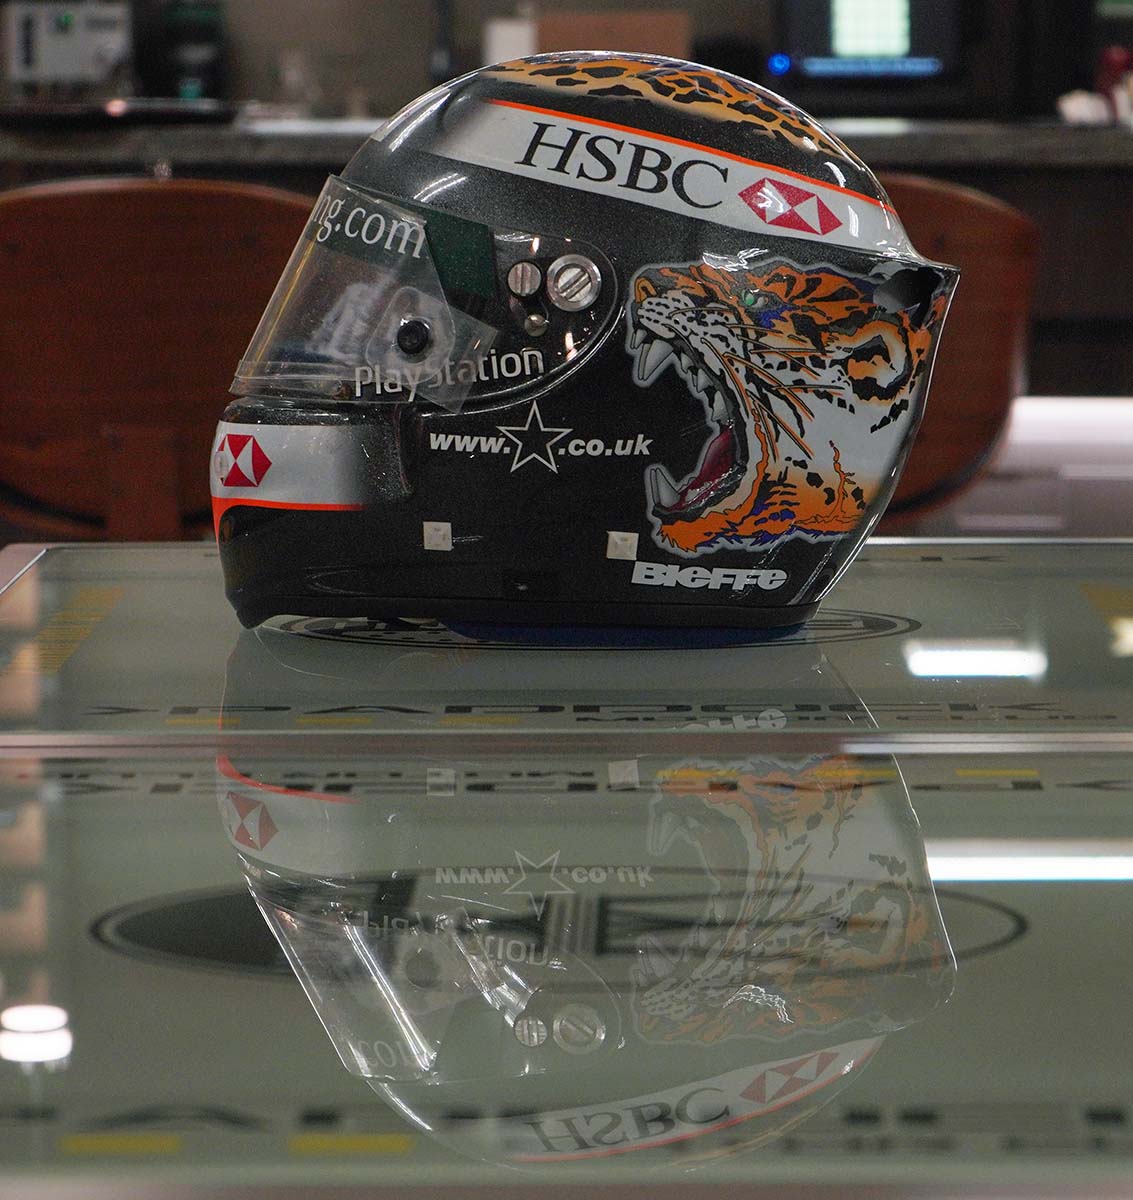 2001 Eddie Irvine Signed United States G.P. Jaguar F1 Race Used Helmet